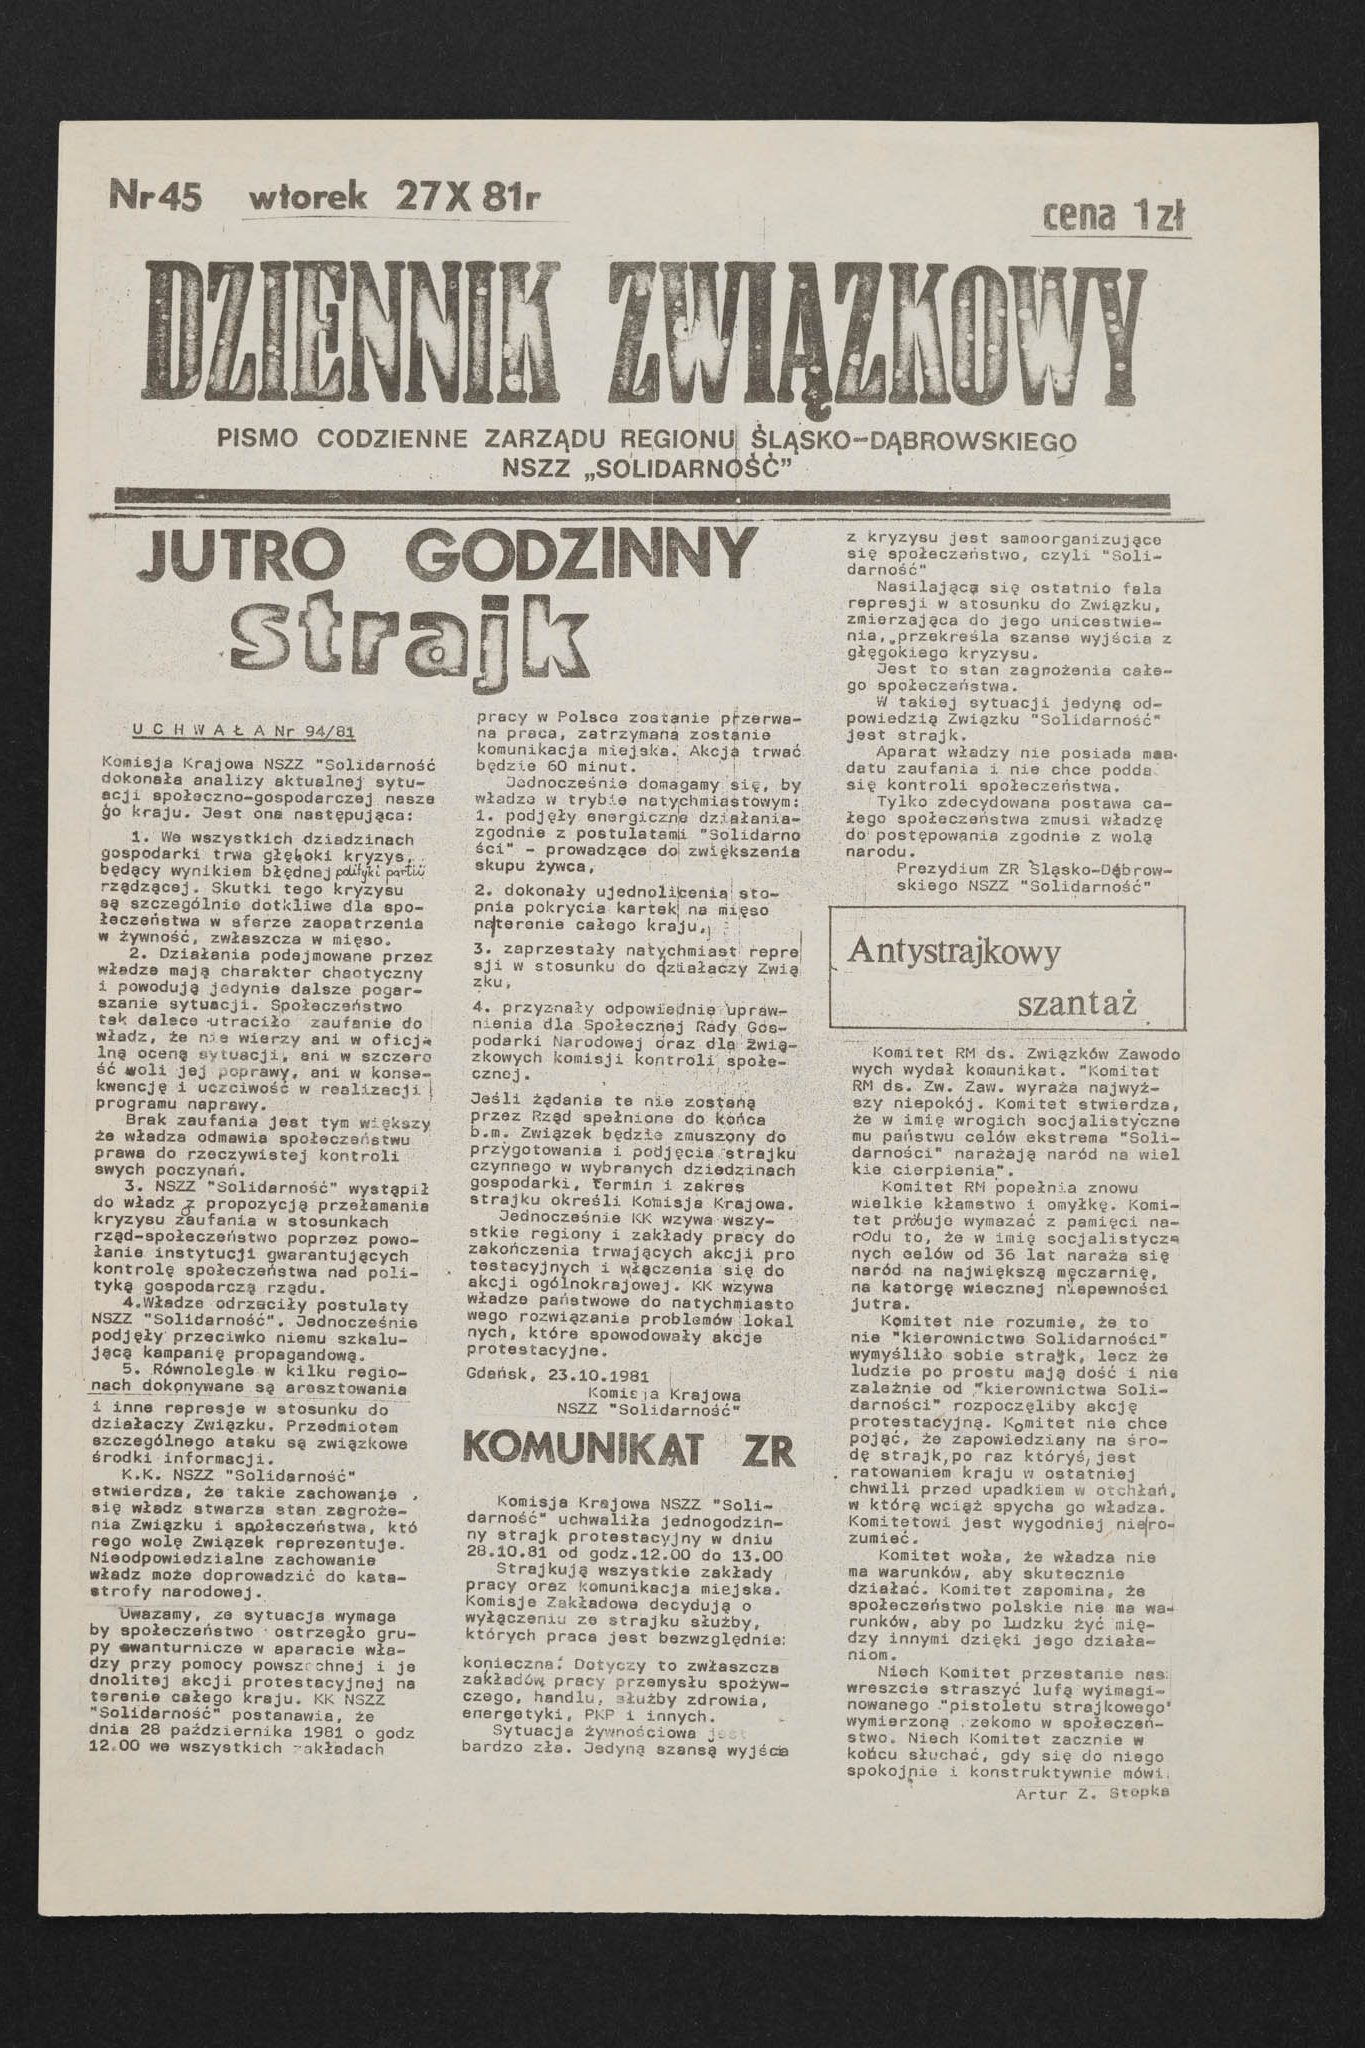 Dziennik związkowy nr 45 27.10.1981